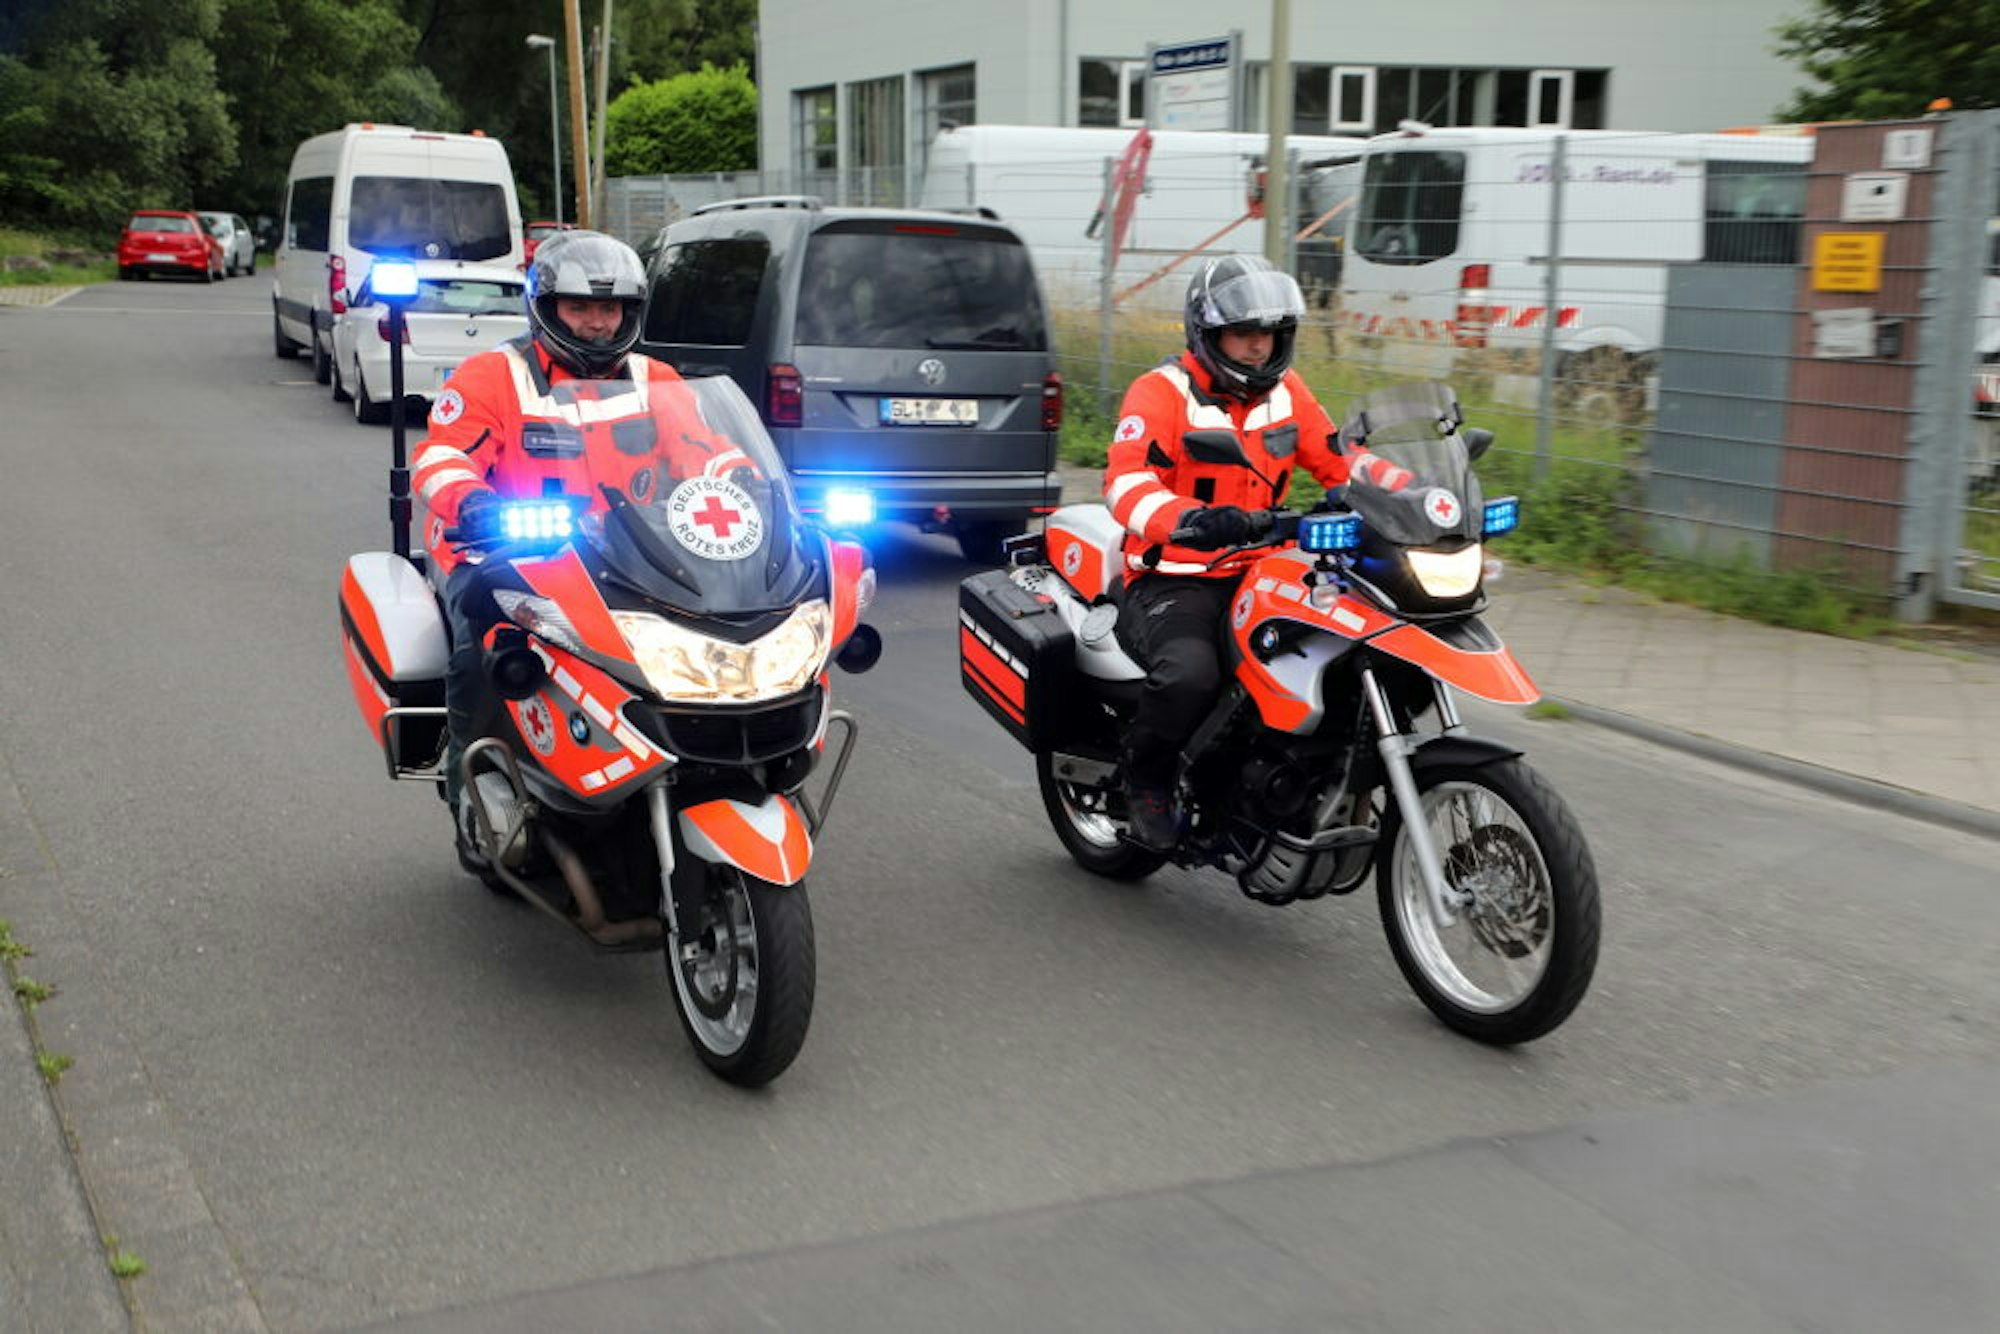 Training einer Einsatzfahrt: die beiden DRK-Motorräder in Aktion.